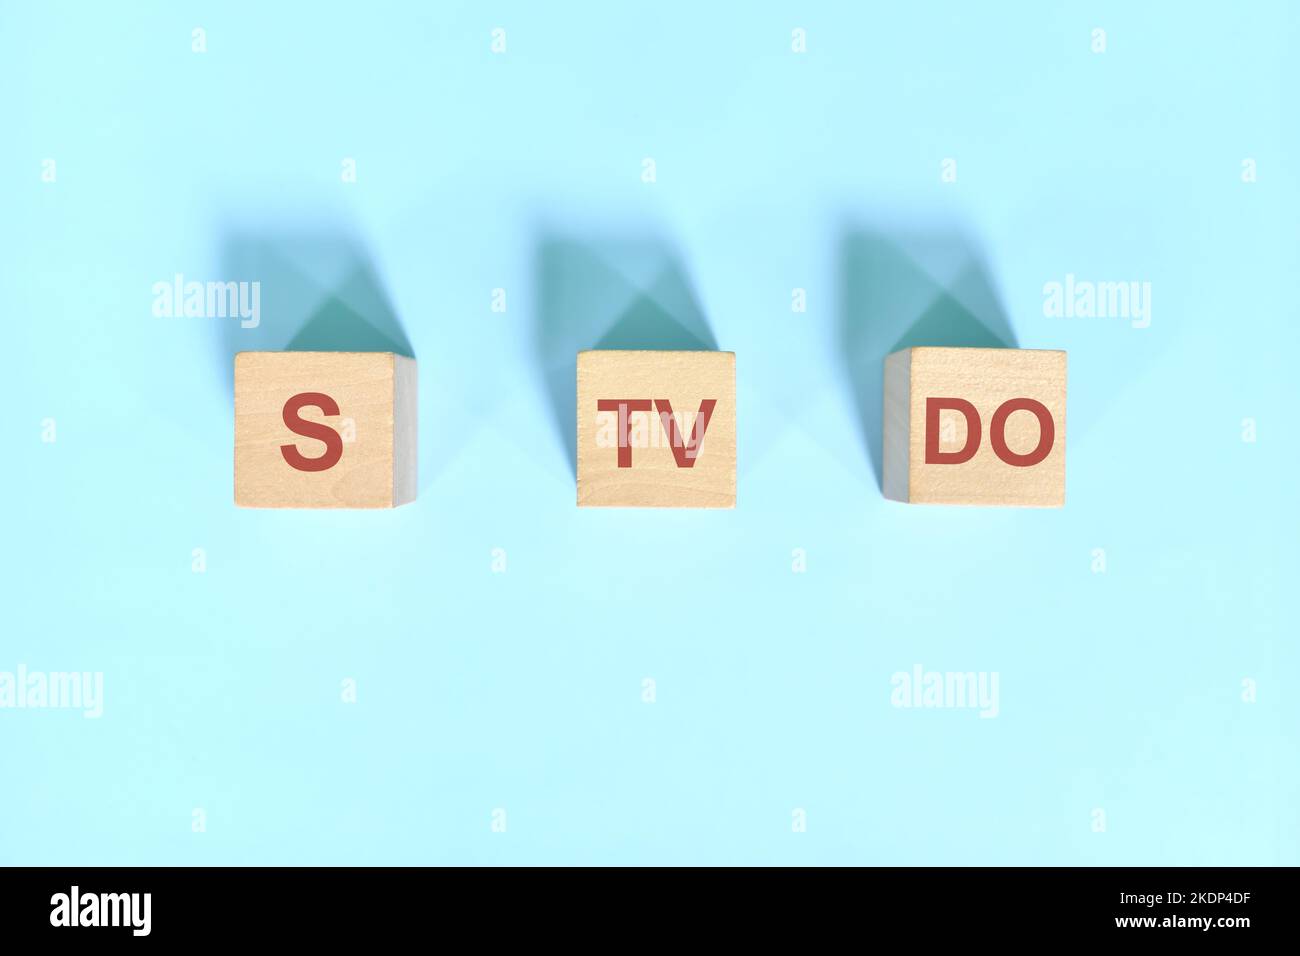 S TV TUN grundlegende Satzmuster englische Grammatik Konzept. Holzblöcke flach lagen auf blauem Hintergrund. Stockfoto